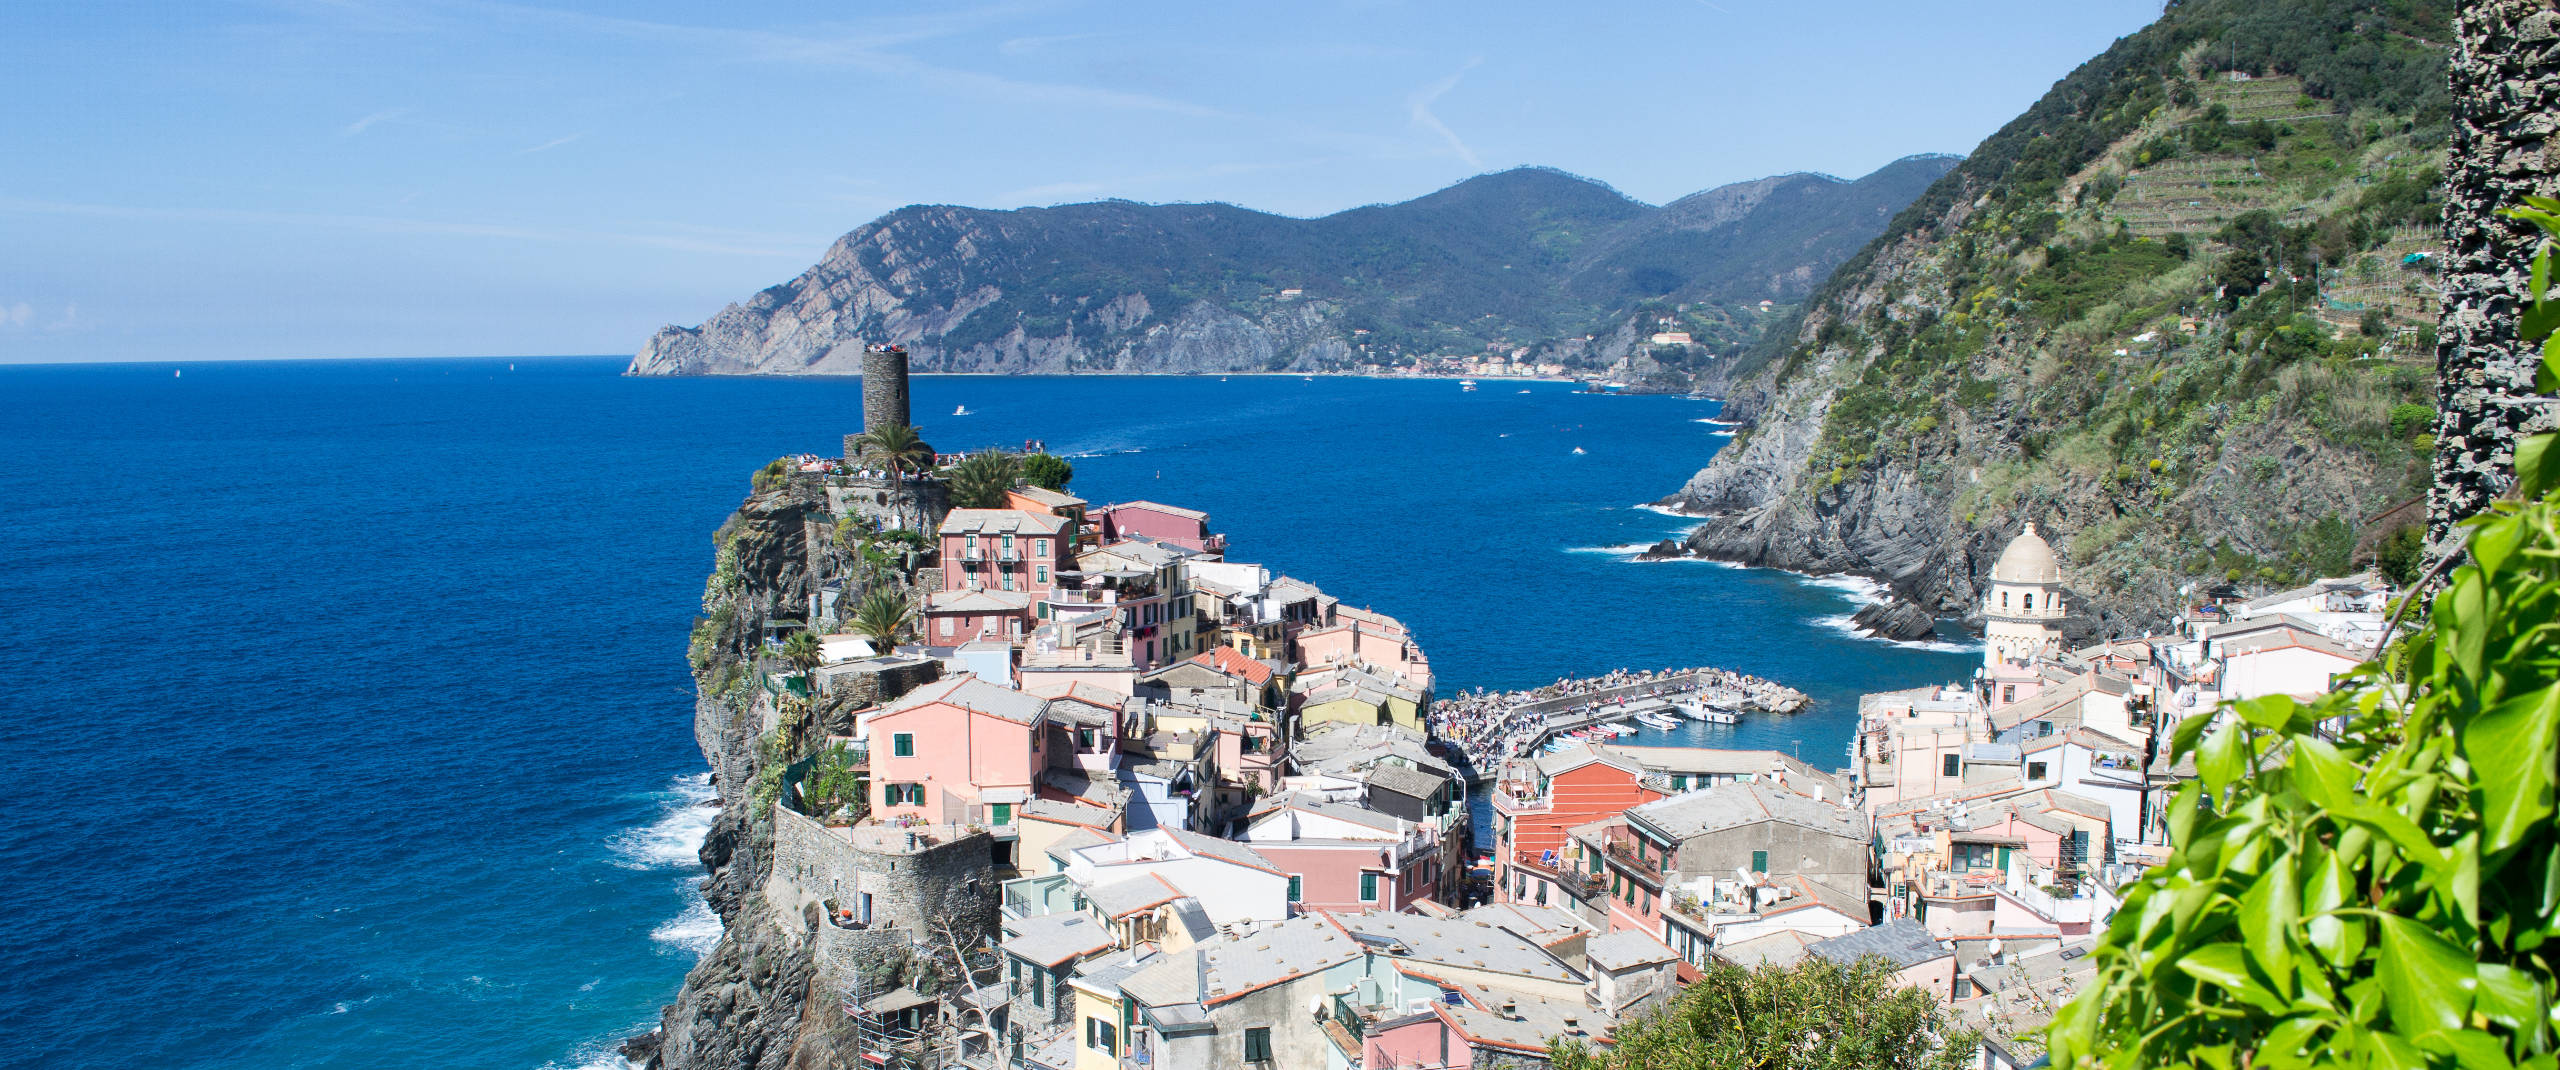 Il simbolo delle cinque terre Vernazza - Liguria